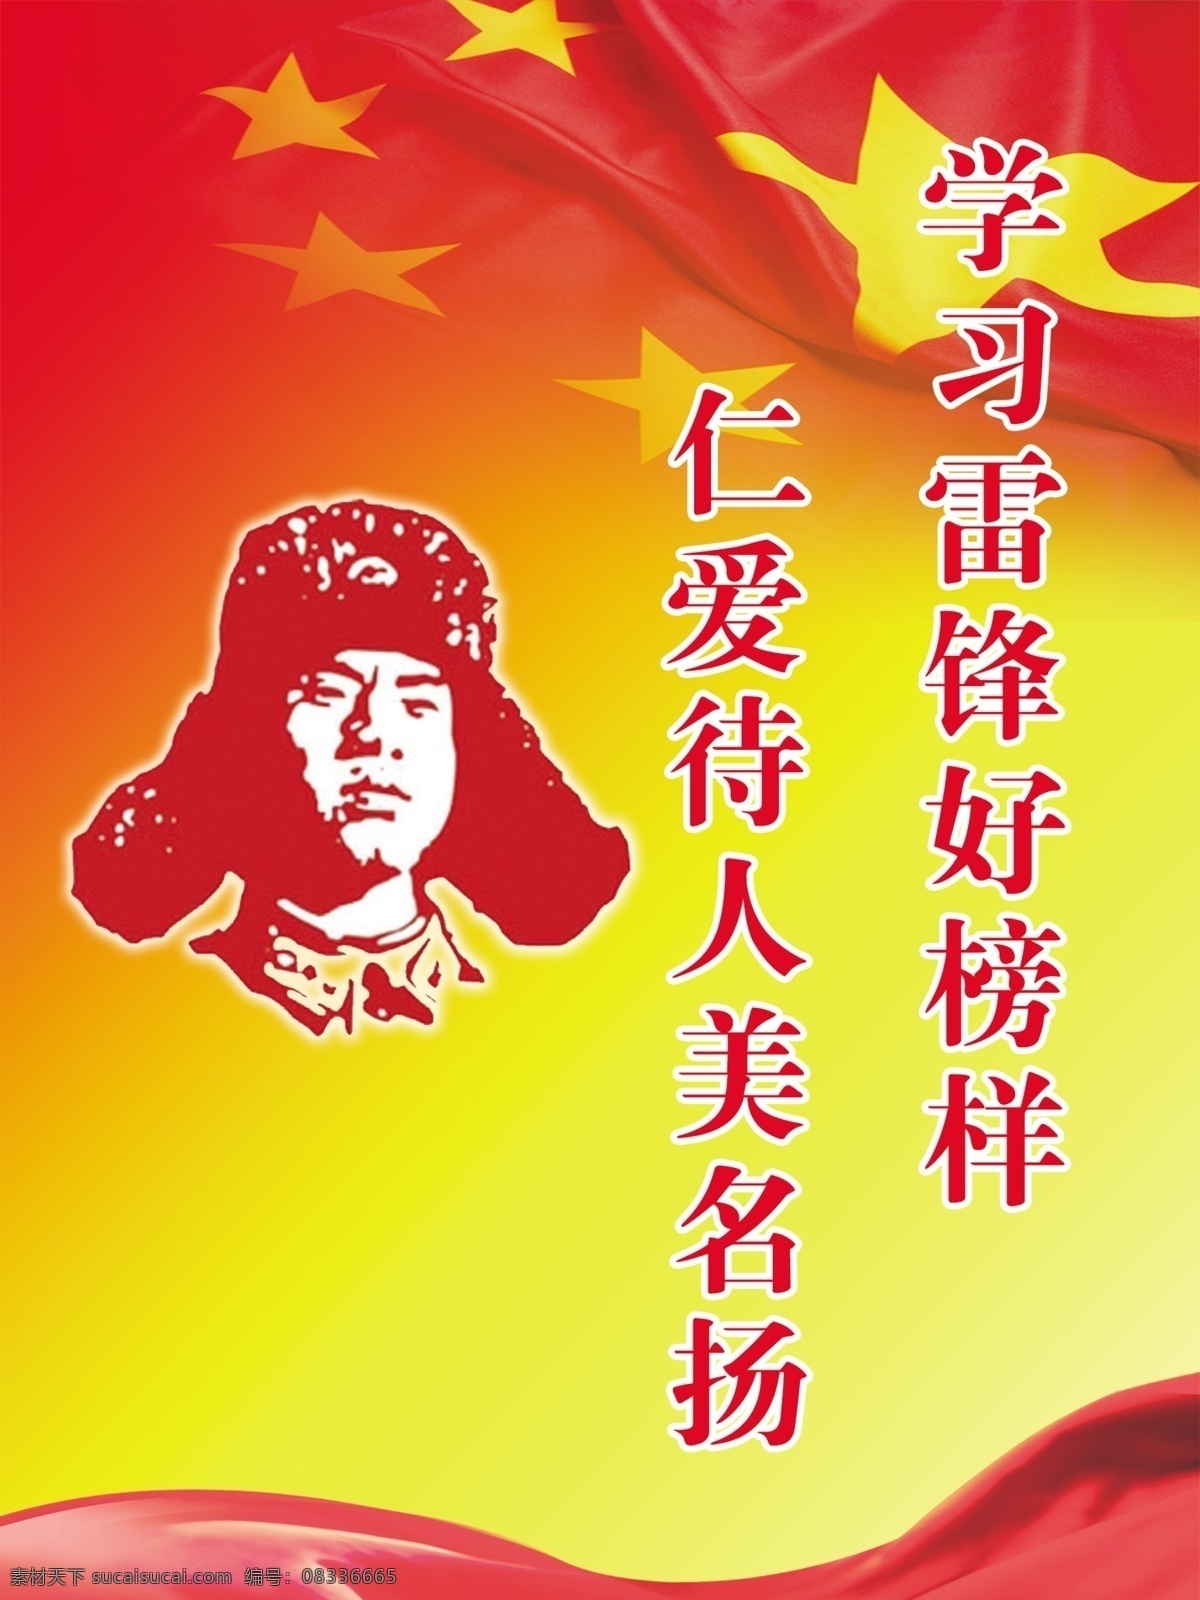 学习雷锋 雷锋 雷锋精神 雷锋肖像 彩带 中国国旗 展板模板 广告设计模板 源文件